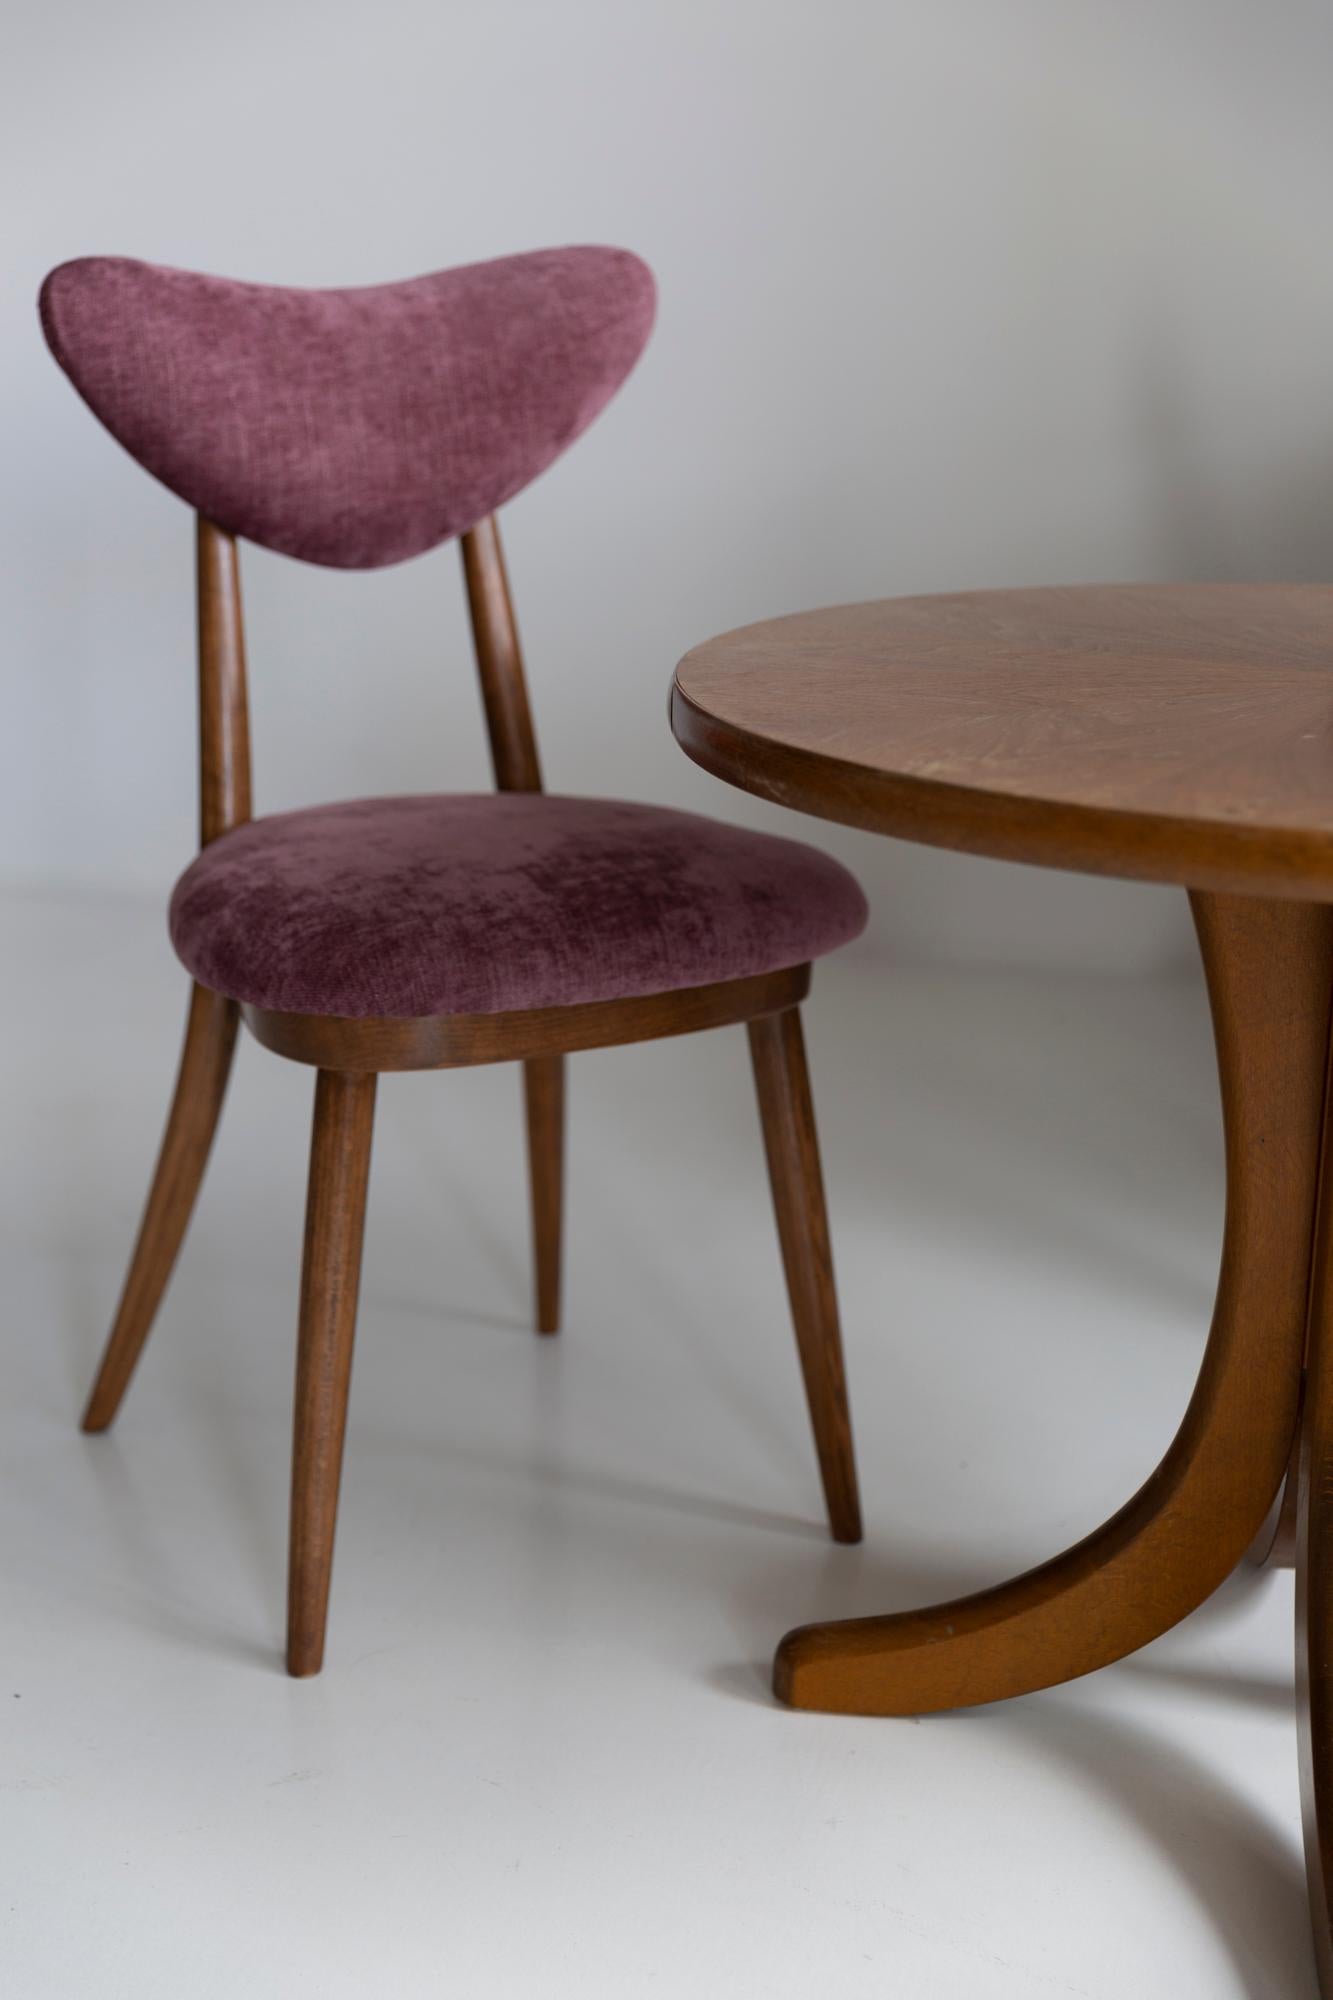 Polish Midcentury Plum Violet Velvet, Walnut Wood Heart Chair, Europe, 1960s For Sale